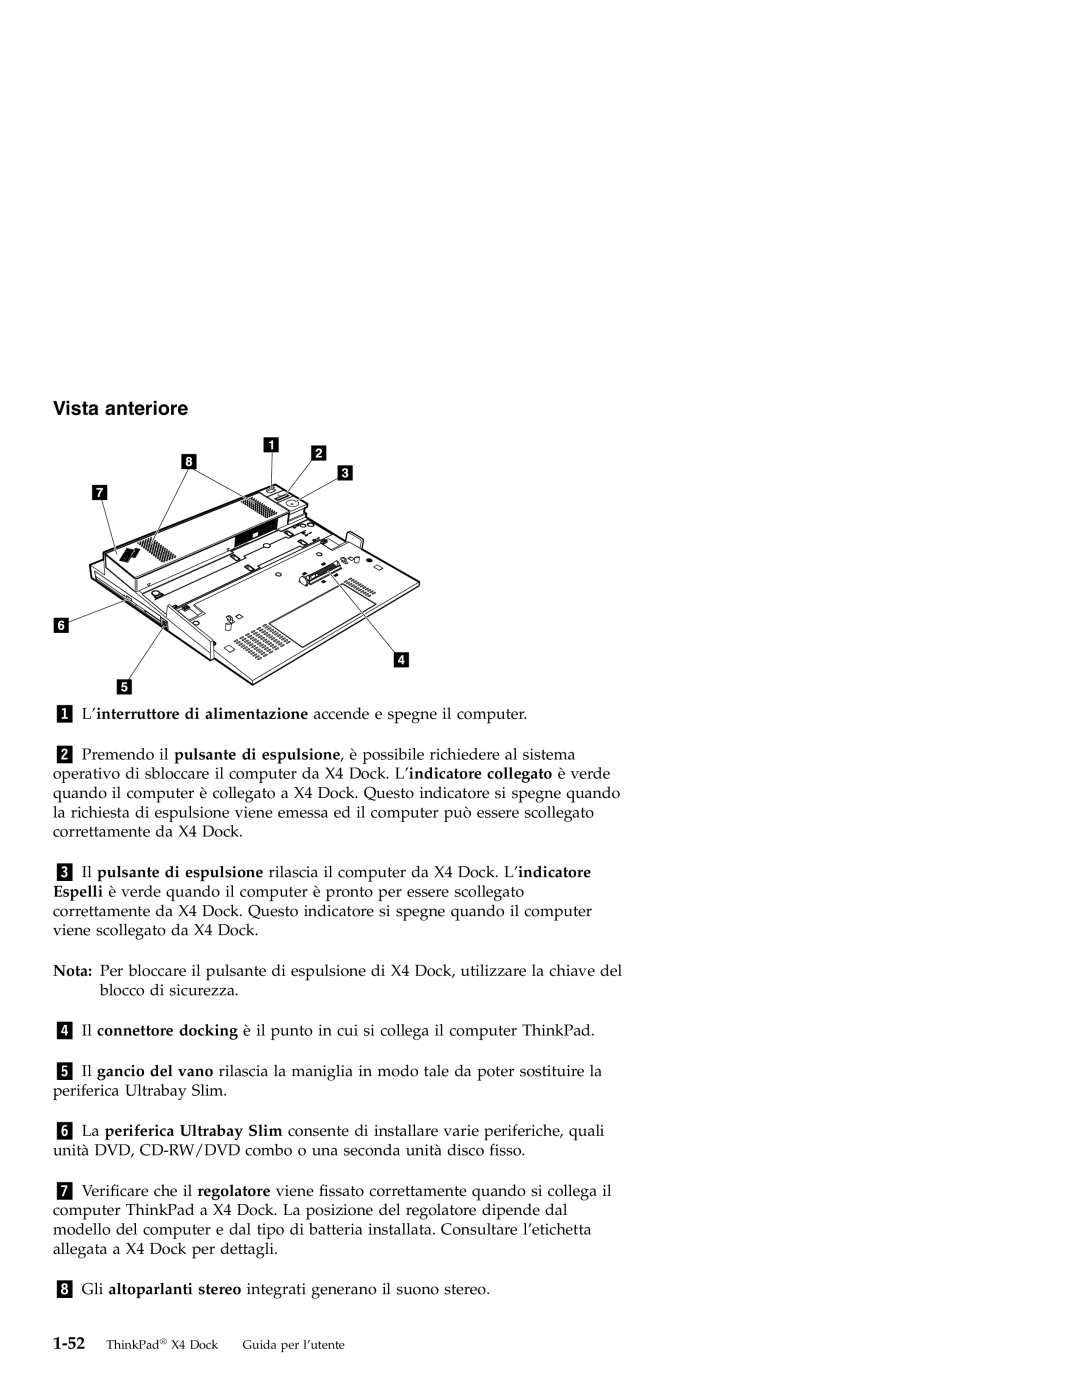 IBM X4 manual Vista anteriore 